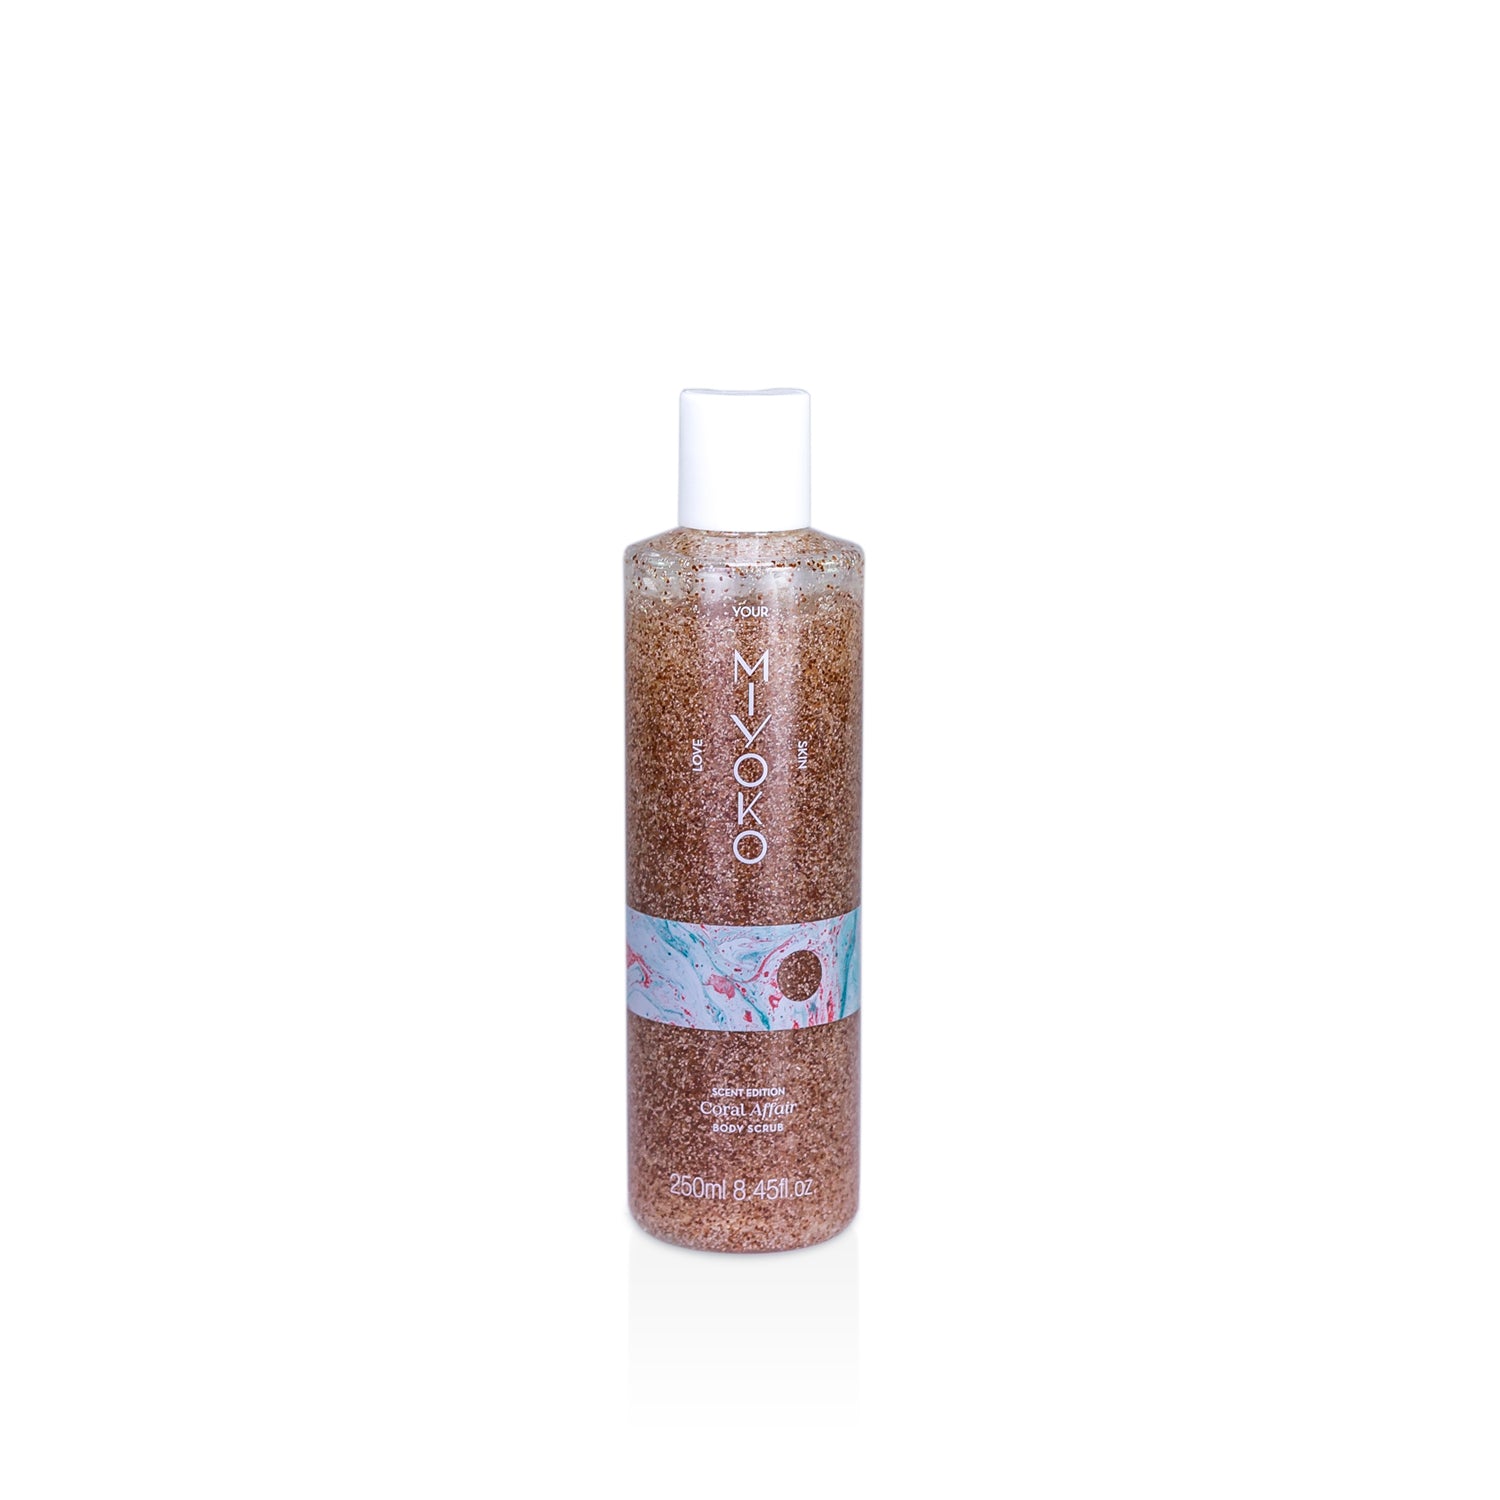 Gel de banho esfoliante de 250ml com caroço de alperce e celulose, do aroma Coral Affair.